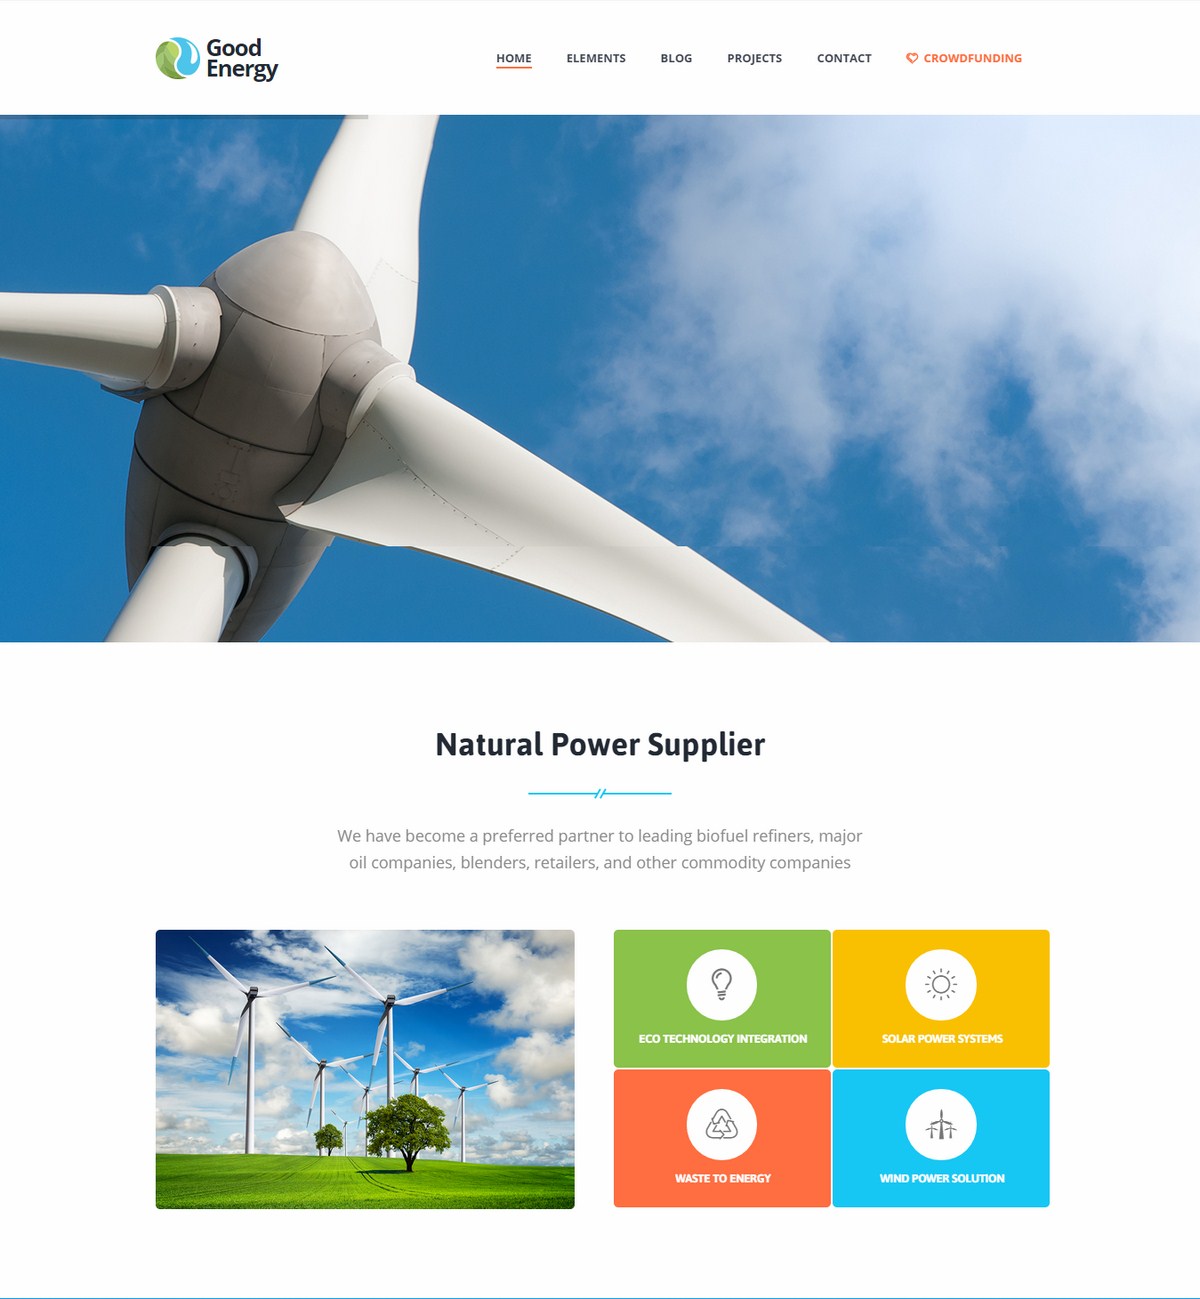 Mẫu Website giới thiệu Công ty - Good Energy